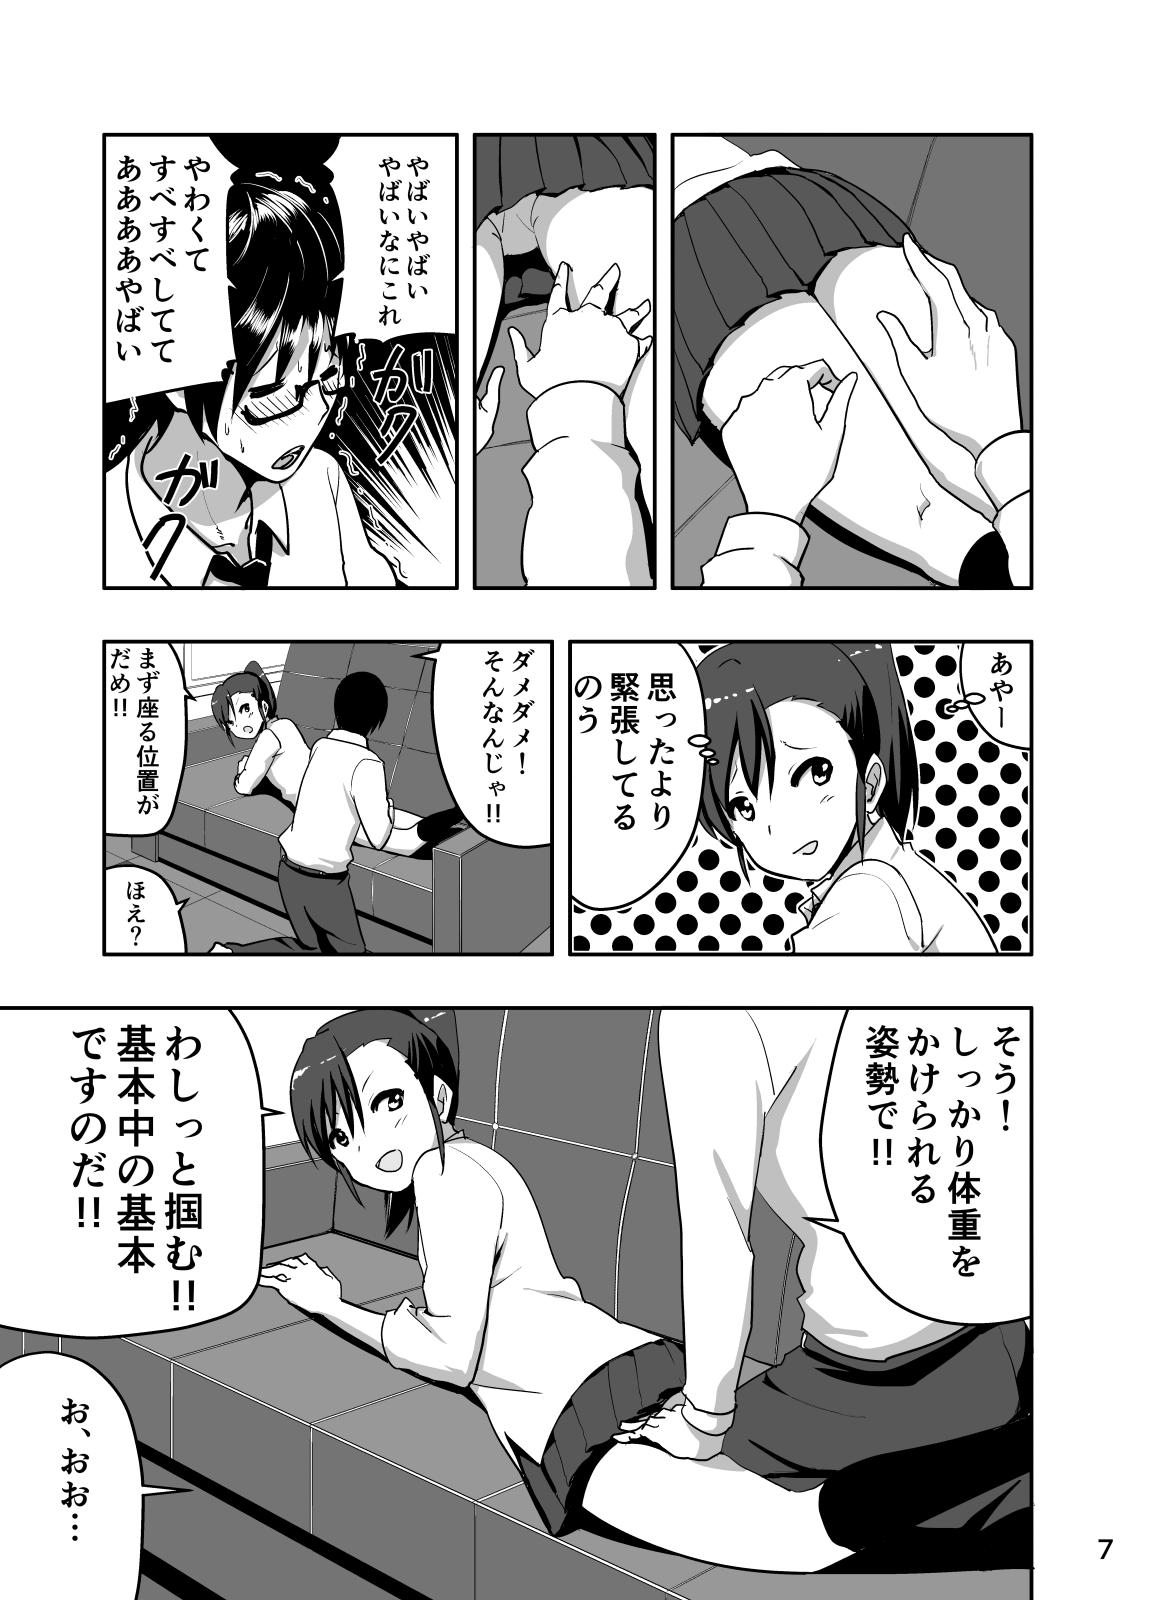 Groupsex Mami Manga 3 - The idolmaster Skinny - Page 7